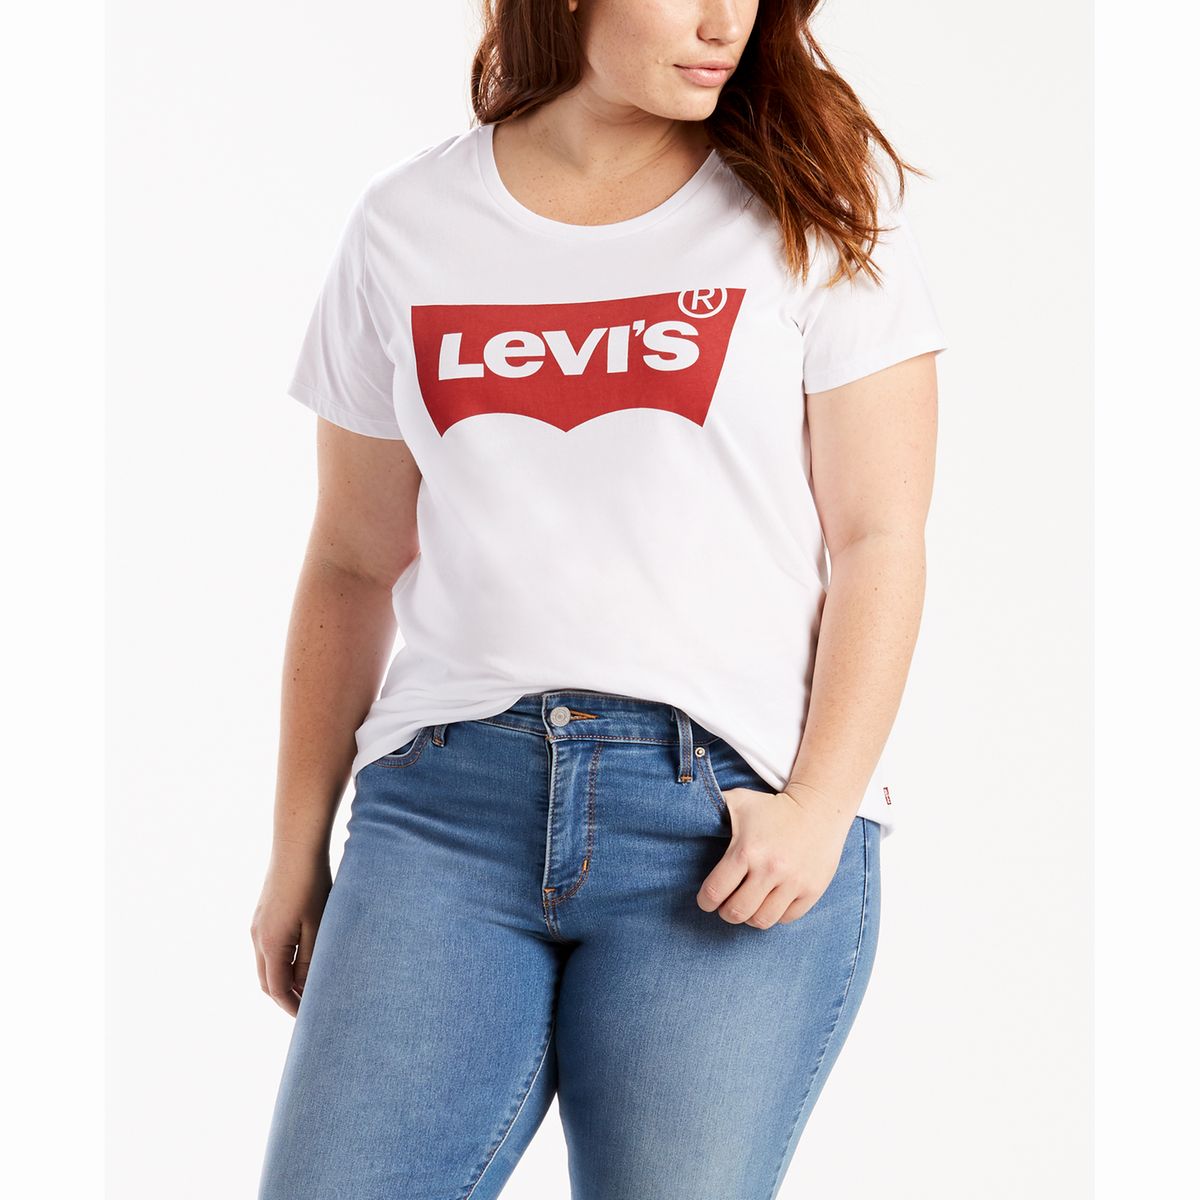 LEVI'S BLANC T/Shirt avec logo, 22491-0039 taille L neuf avec étiquettes